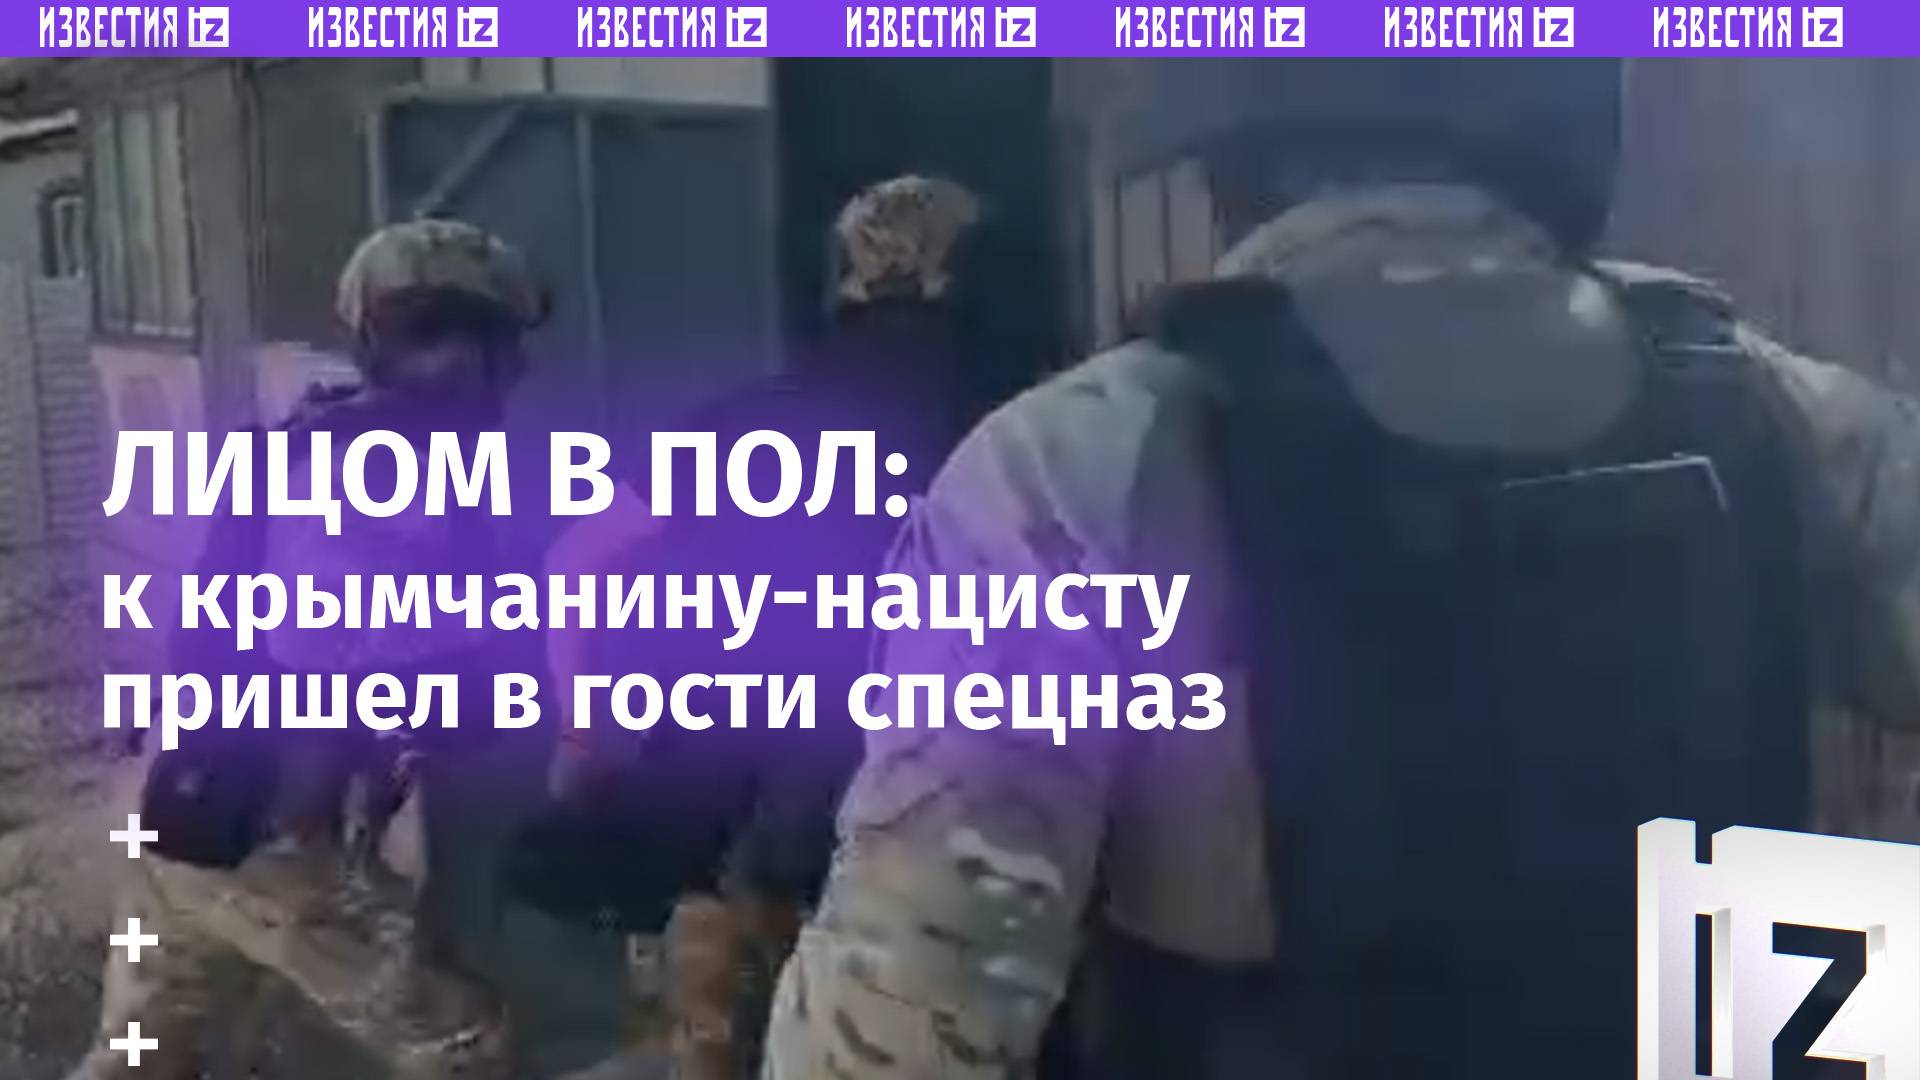 «Лежать! Руки за голову»: спецназ пришел в гости к крымчанину, кричавшему нацистские лозунги